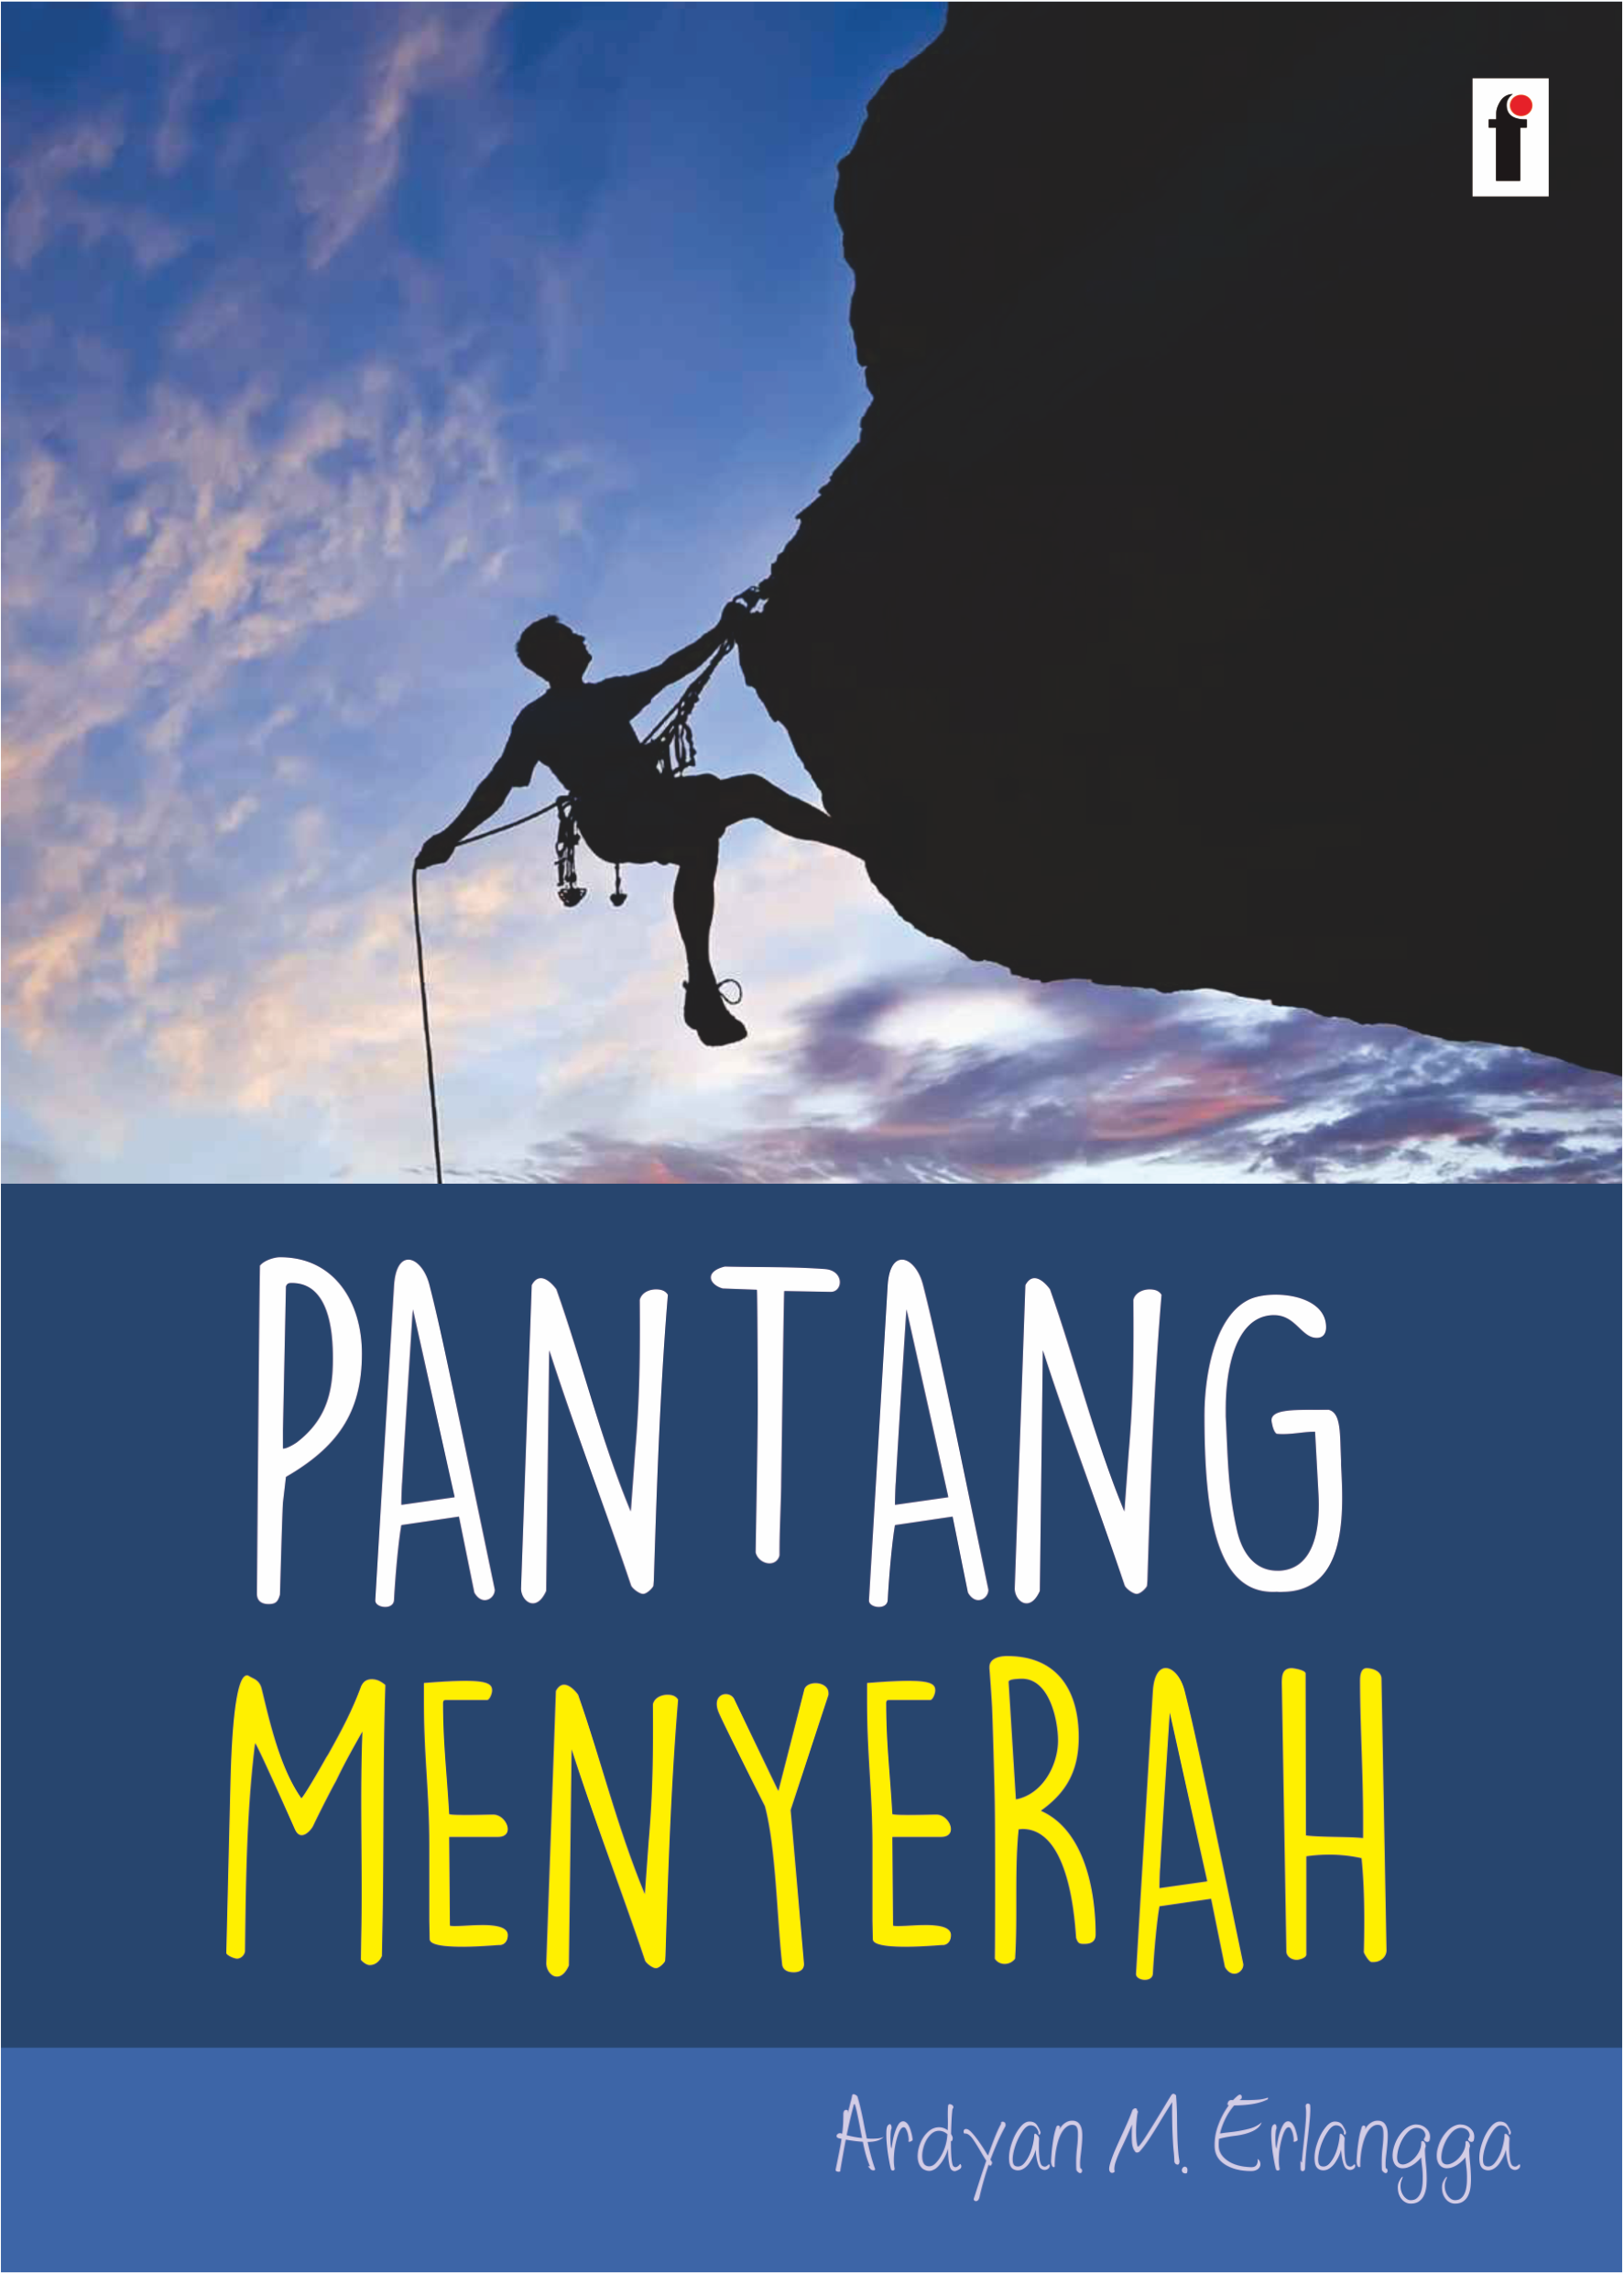 cover/(20-11-2019)pantang-menyerah.png